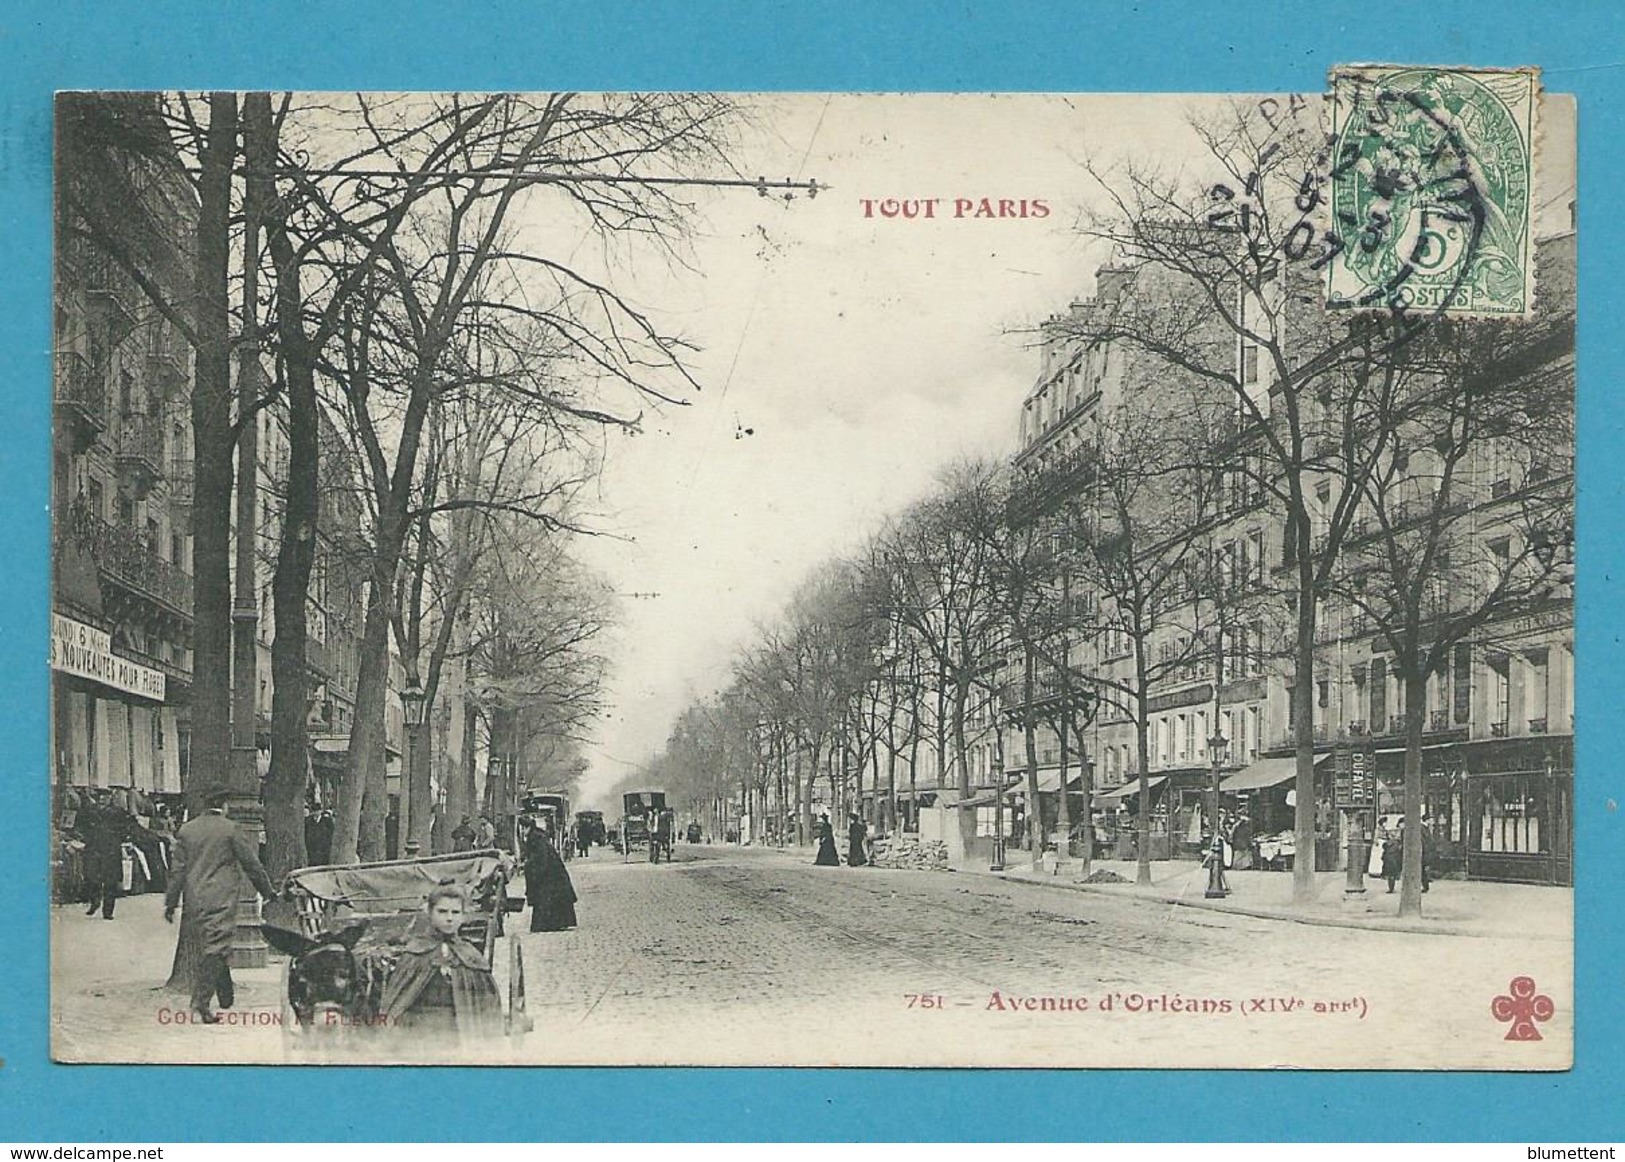 CPA TOUT PARIS 751 - Avenue D'Orléans (XIVème Arrt.) Ed. FLEURY - Paris (14)